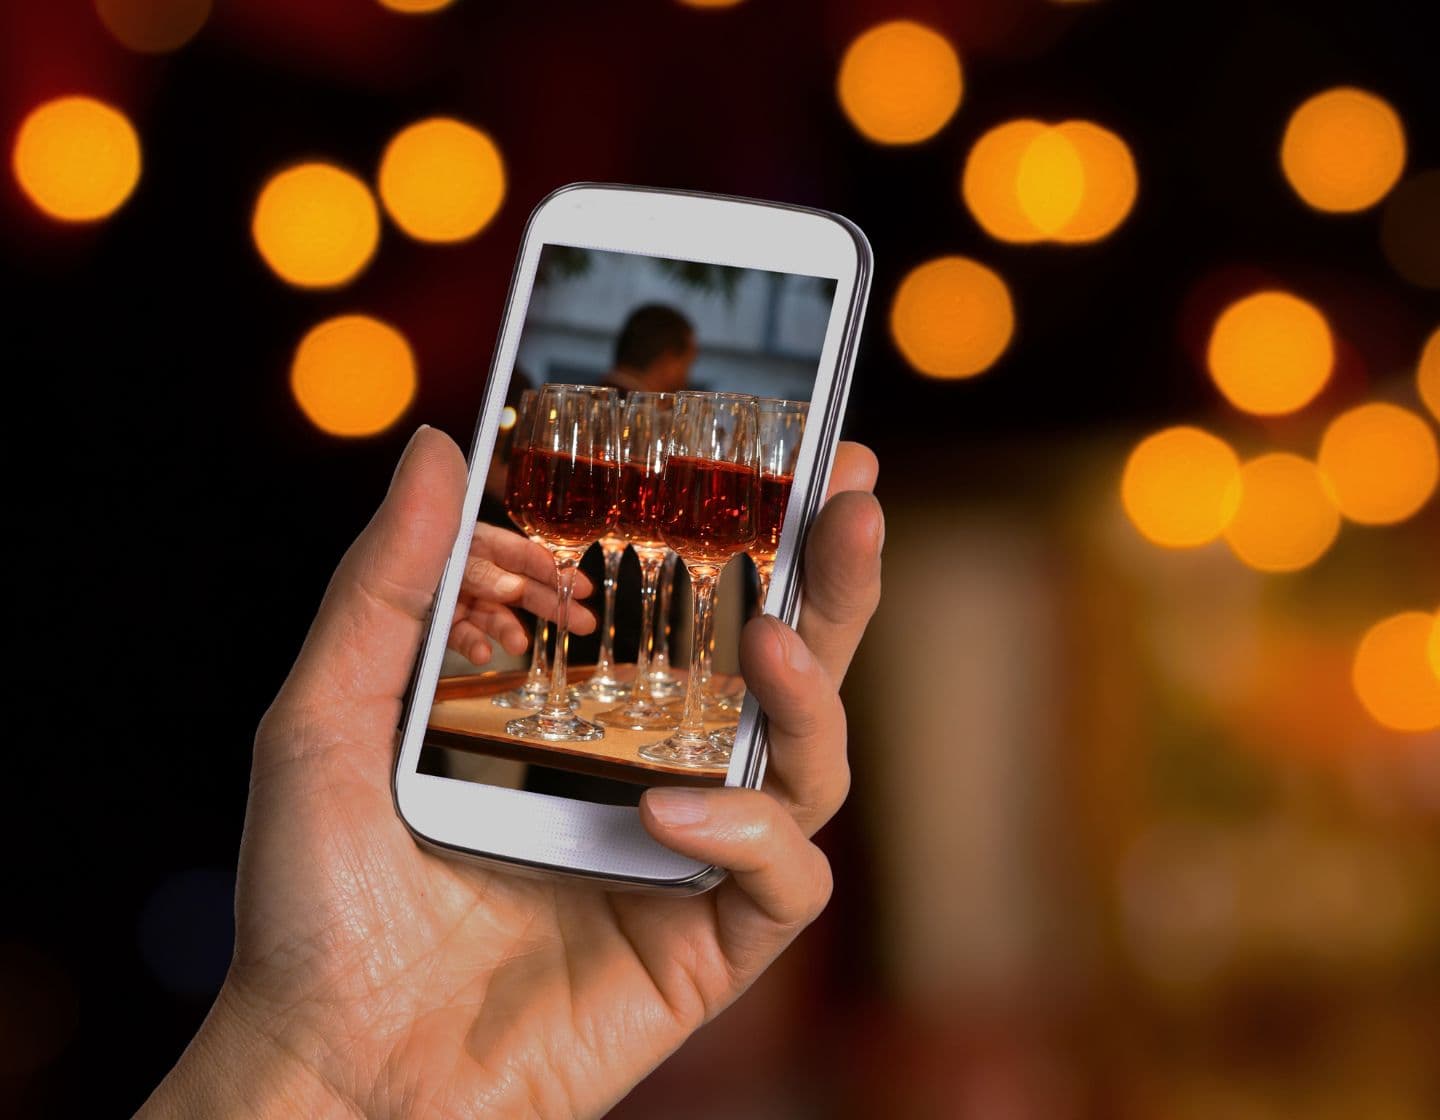 Mano sosteniendo el teléfono con foto de copas de vino.